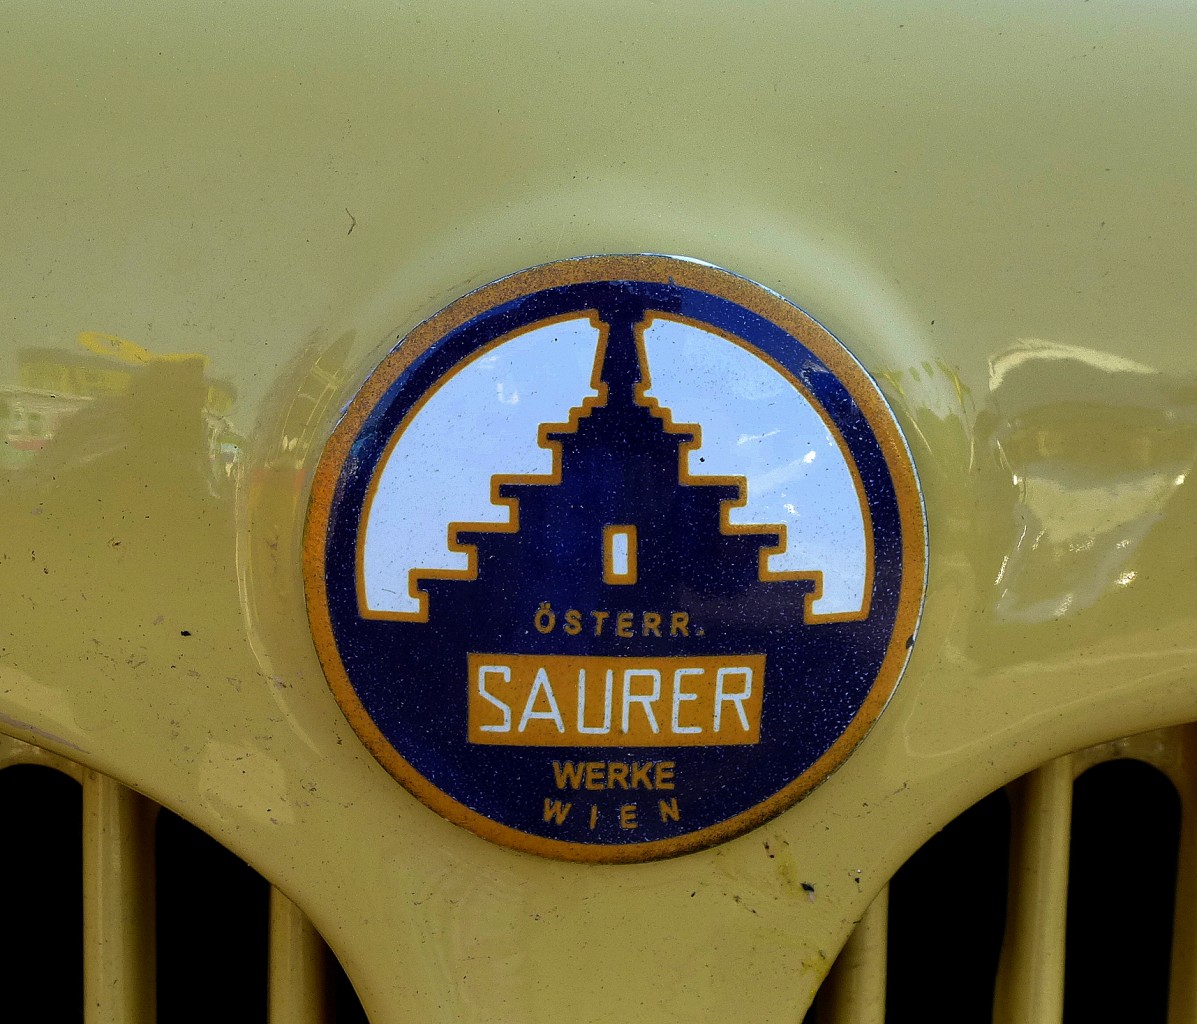 Saurer, Khleremblem der sterreichischen Saurer-Werke in Wien an einem Oldtimer-reisebus, Mai 2014